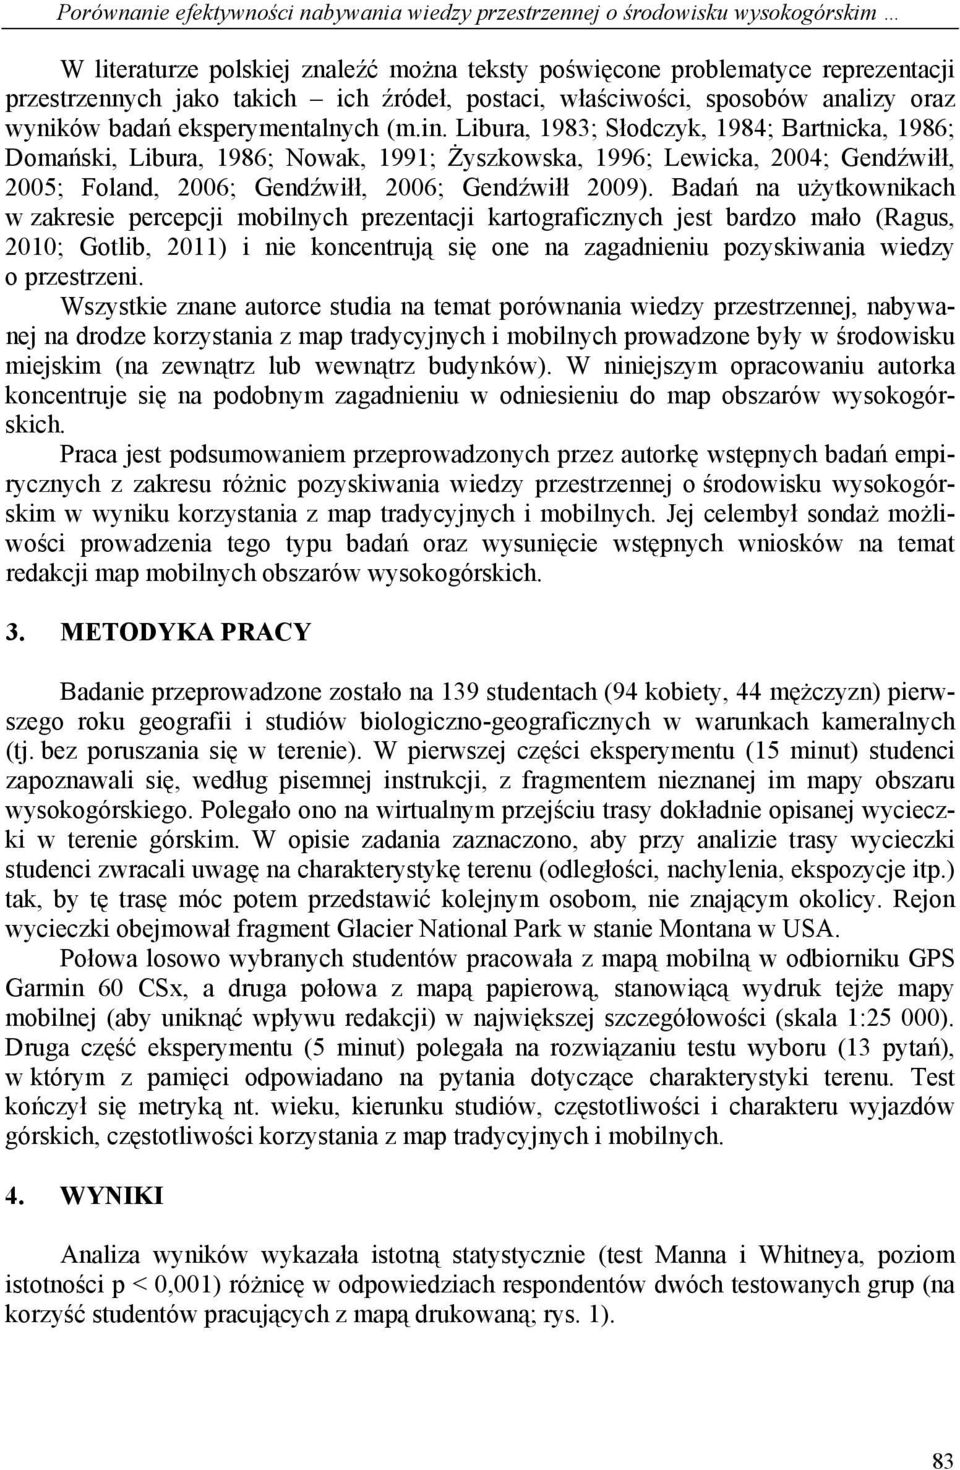 Libura, 1983; Słodczyk, 1984; Bartnicka, 1986; Domański, Libura, 1986; Nowak, 1991; Żyszkowska, 1996; Lewicka, 2004; Gendźwiłł, 2005; Foland, 2006; Gendźwiłł, 2006; Gendźwiłł 2009).